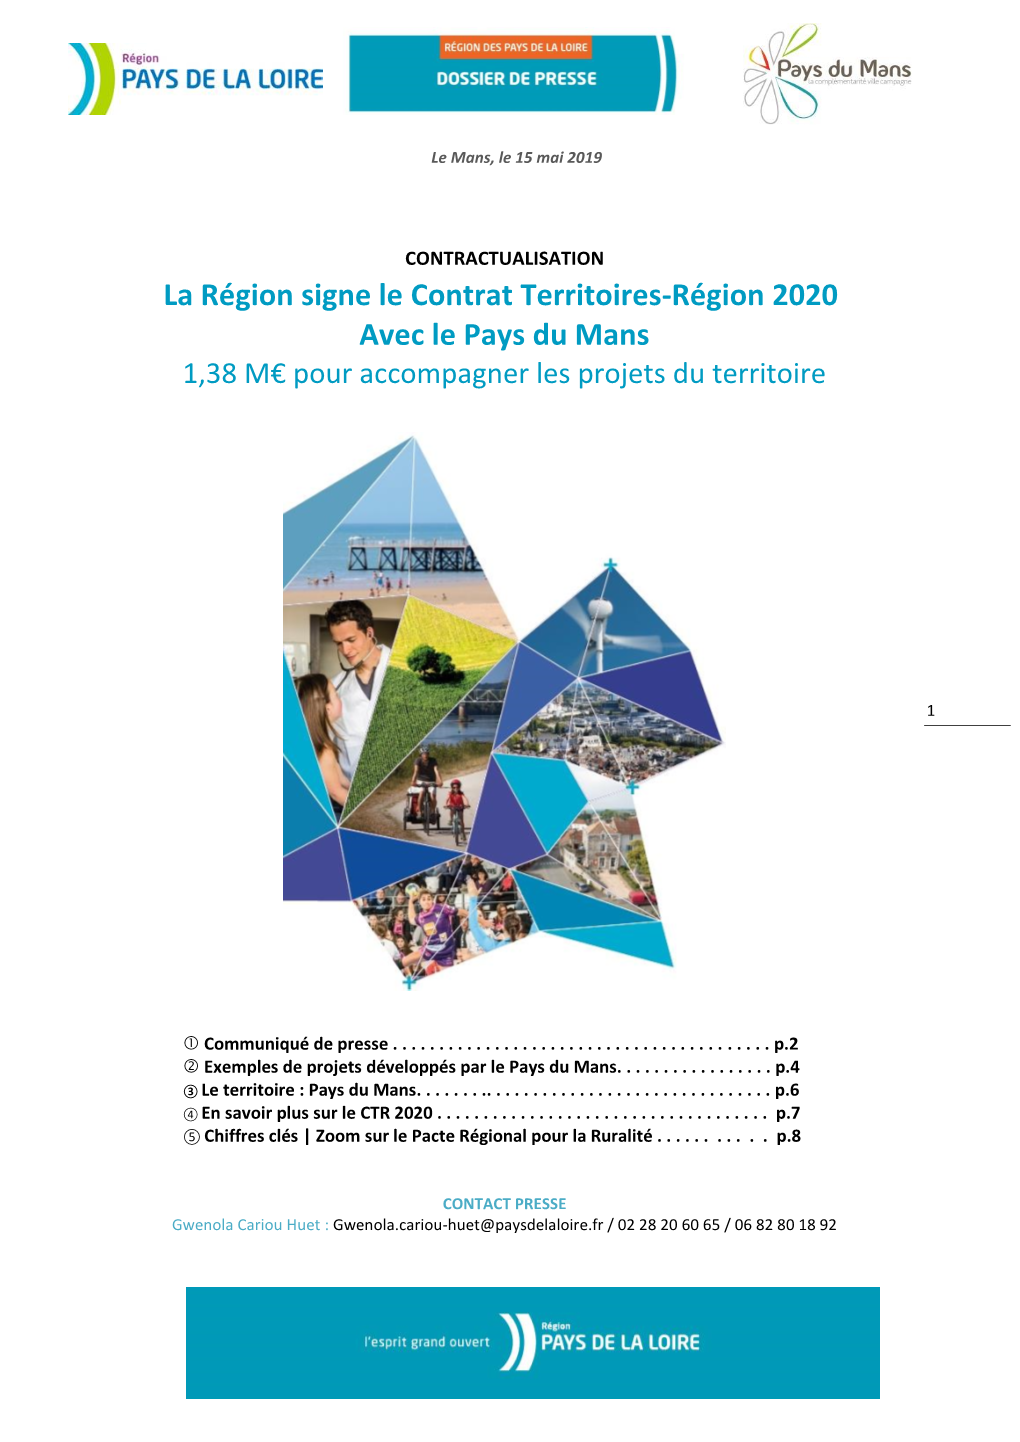 La Région Signe Le Contrat Territoires-Région 2020 Avec Le Pays Du Mans 1,38 M€ Pour Accompagner Les Projets Du Territoire